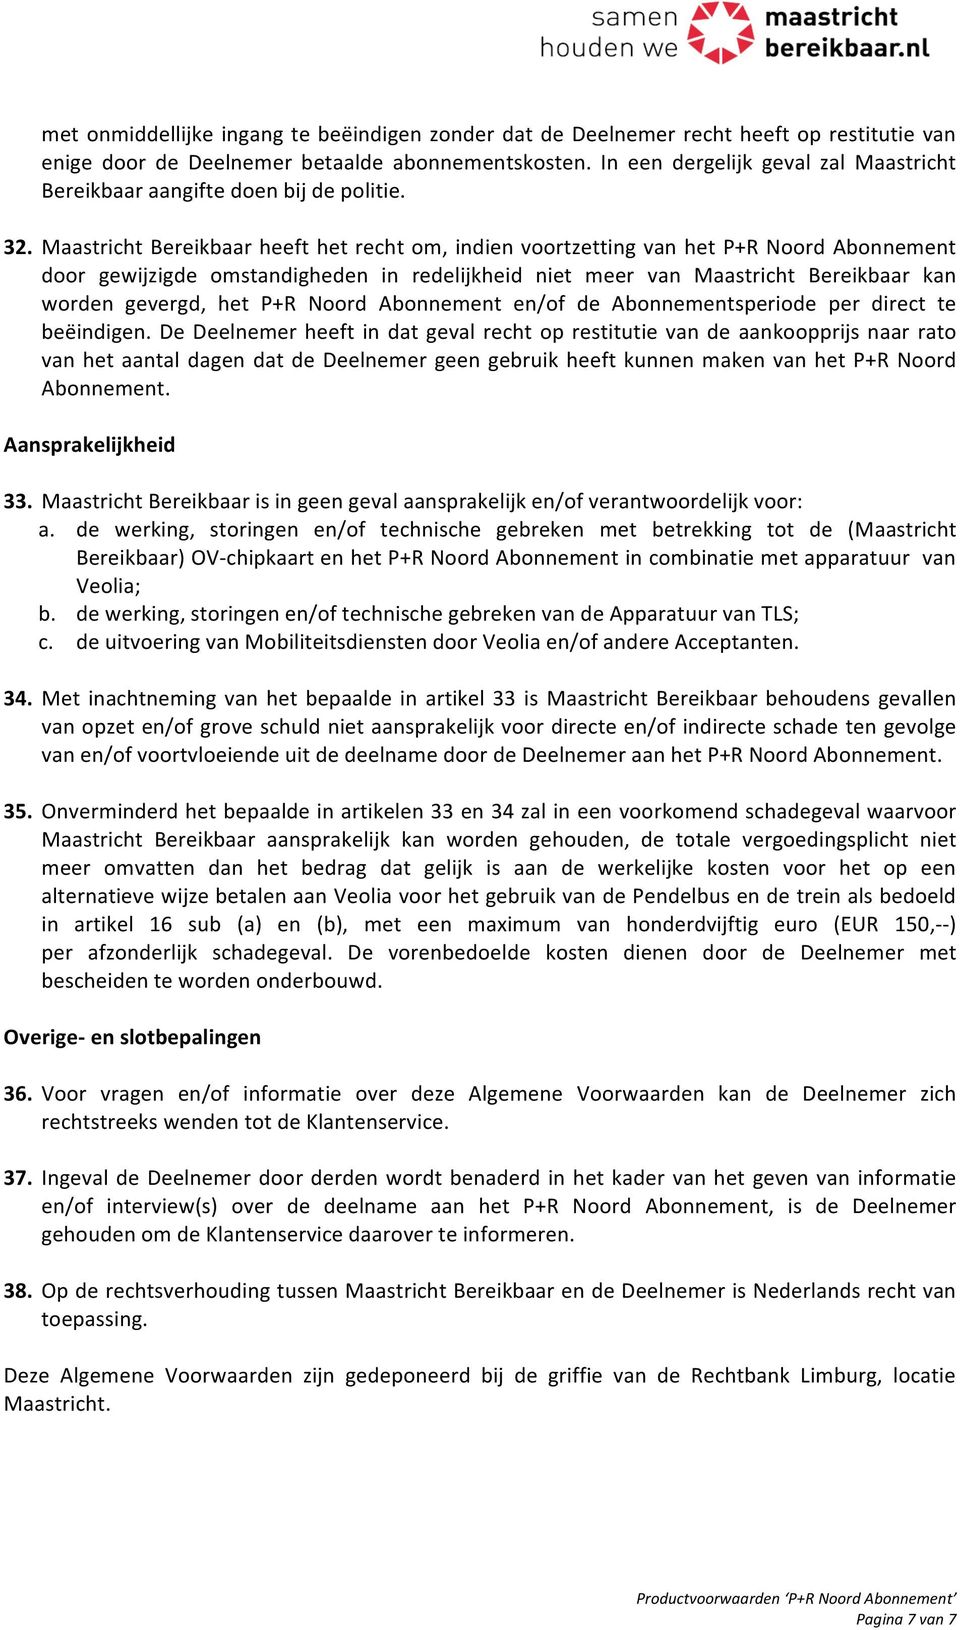 Maastricht Bereikbaar heeft het recht om, indien voortzetting van het P+R Noord Abonnement door gewijzigde omstandigheden in redelijkheid niet meer van Maastricht Bereikbaar kan worden gevergd, het